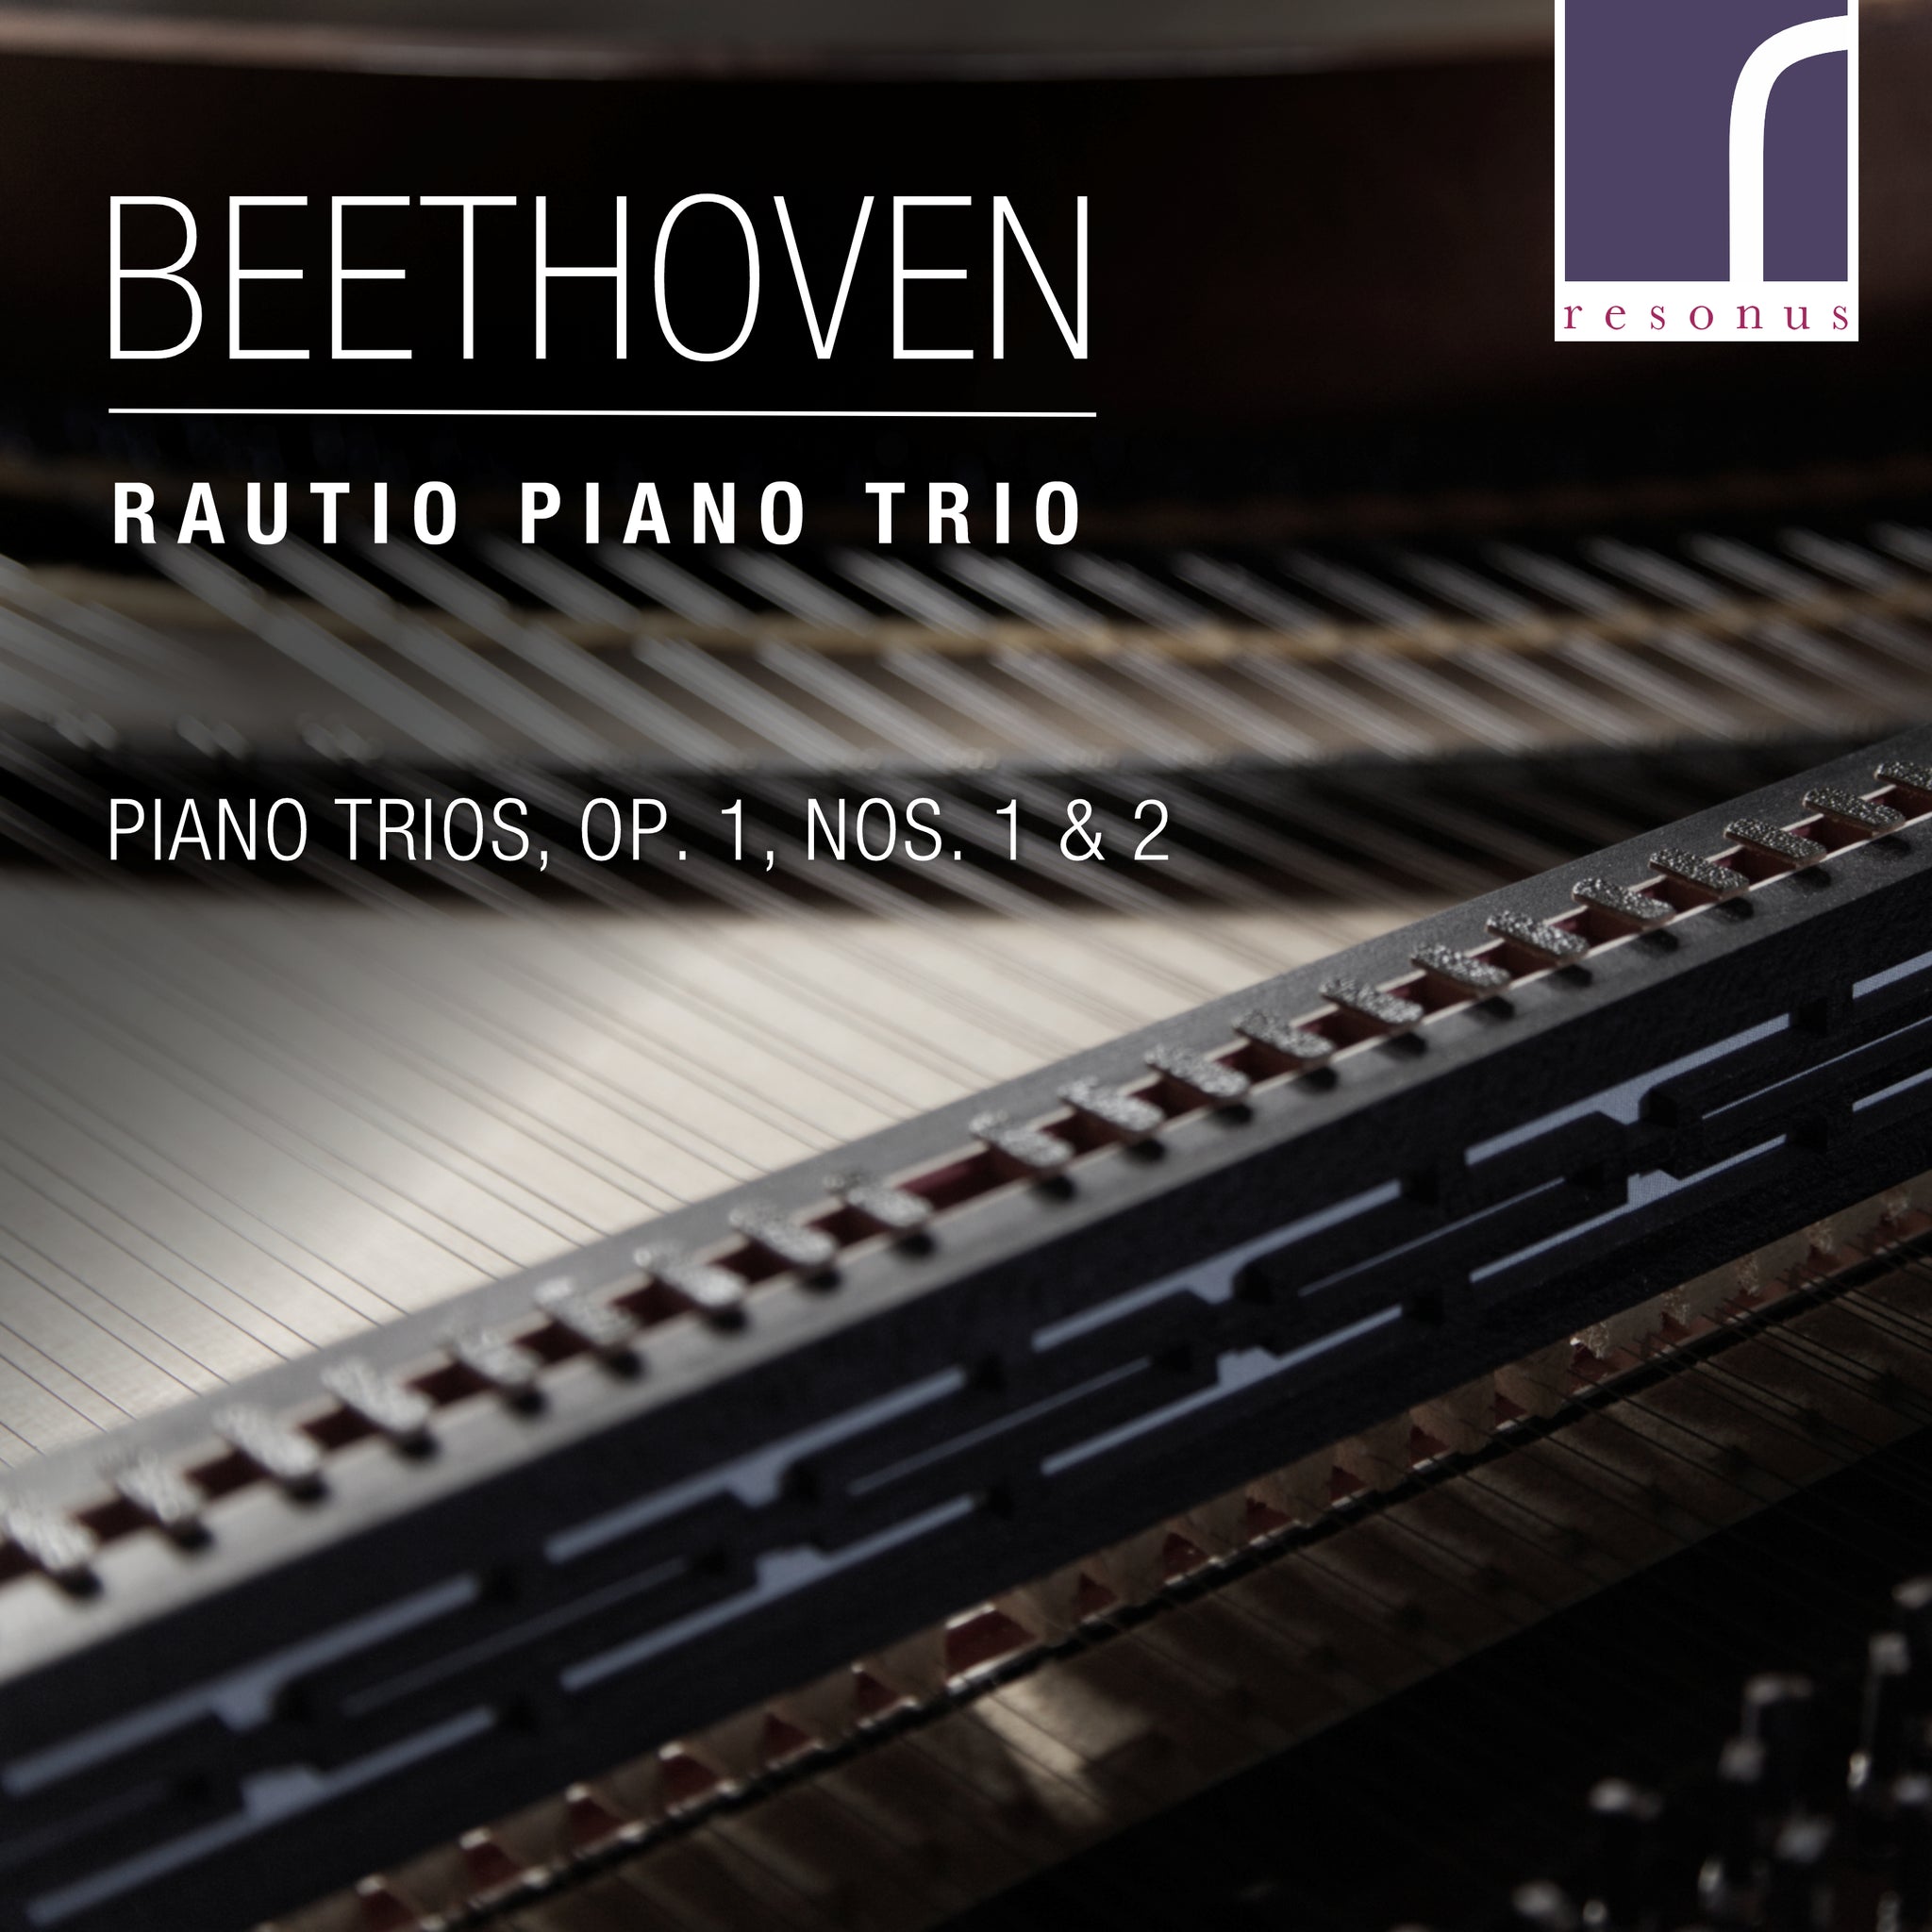 Beethoven: Piano Trios, Op. 1, Nos. 1 & 2 / Rautio Piano Trio